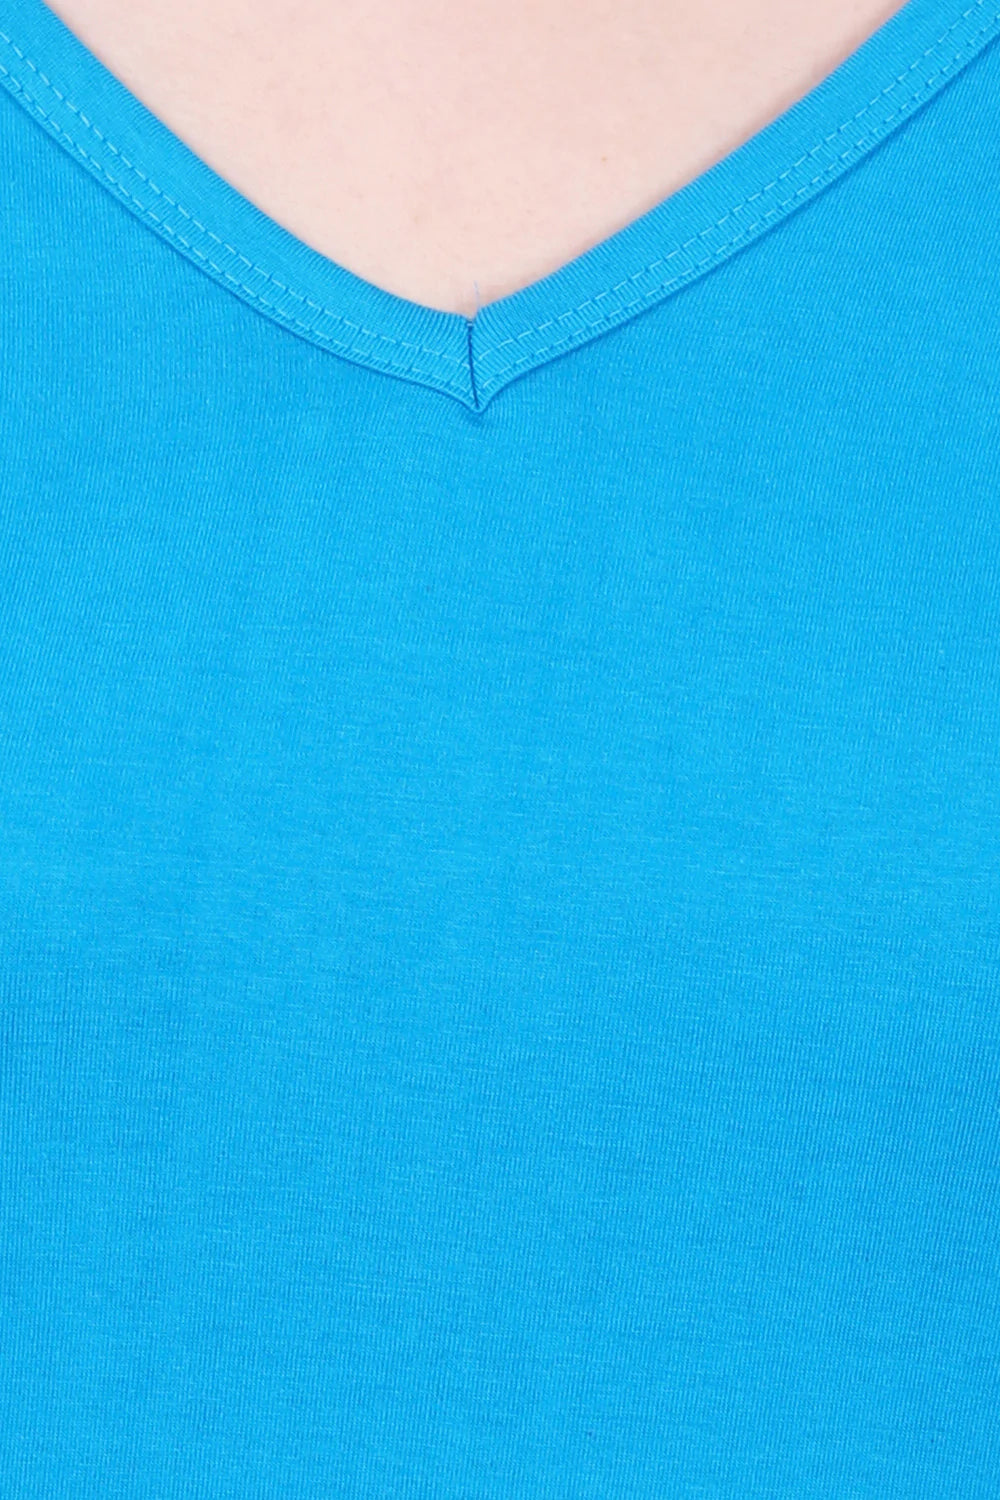 Women's Cotton Plain V Neck Half Sleeve Blue Color T-Shirt